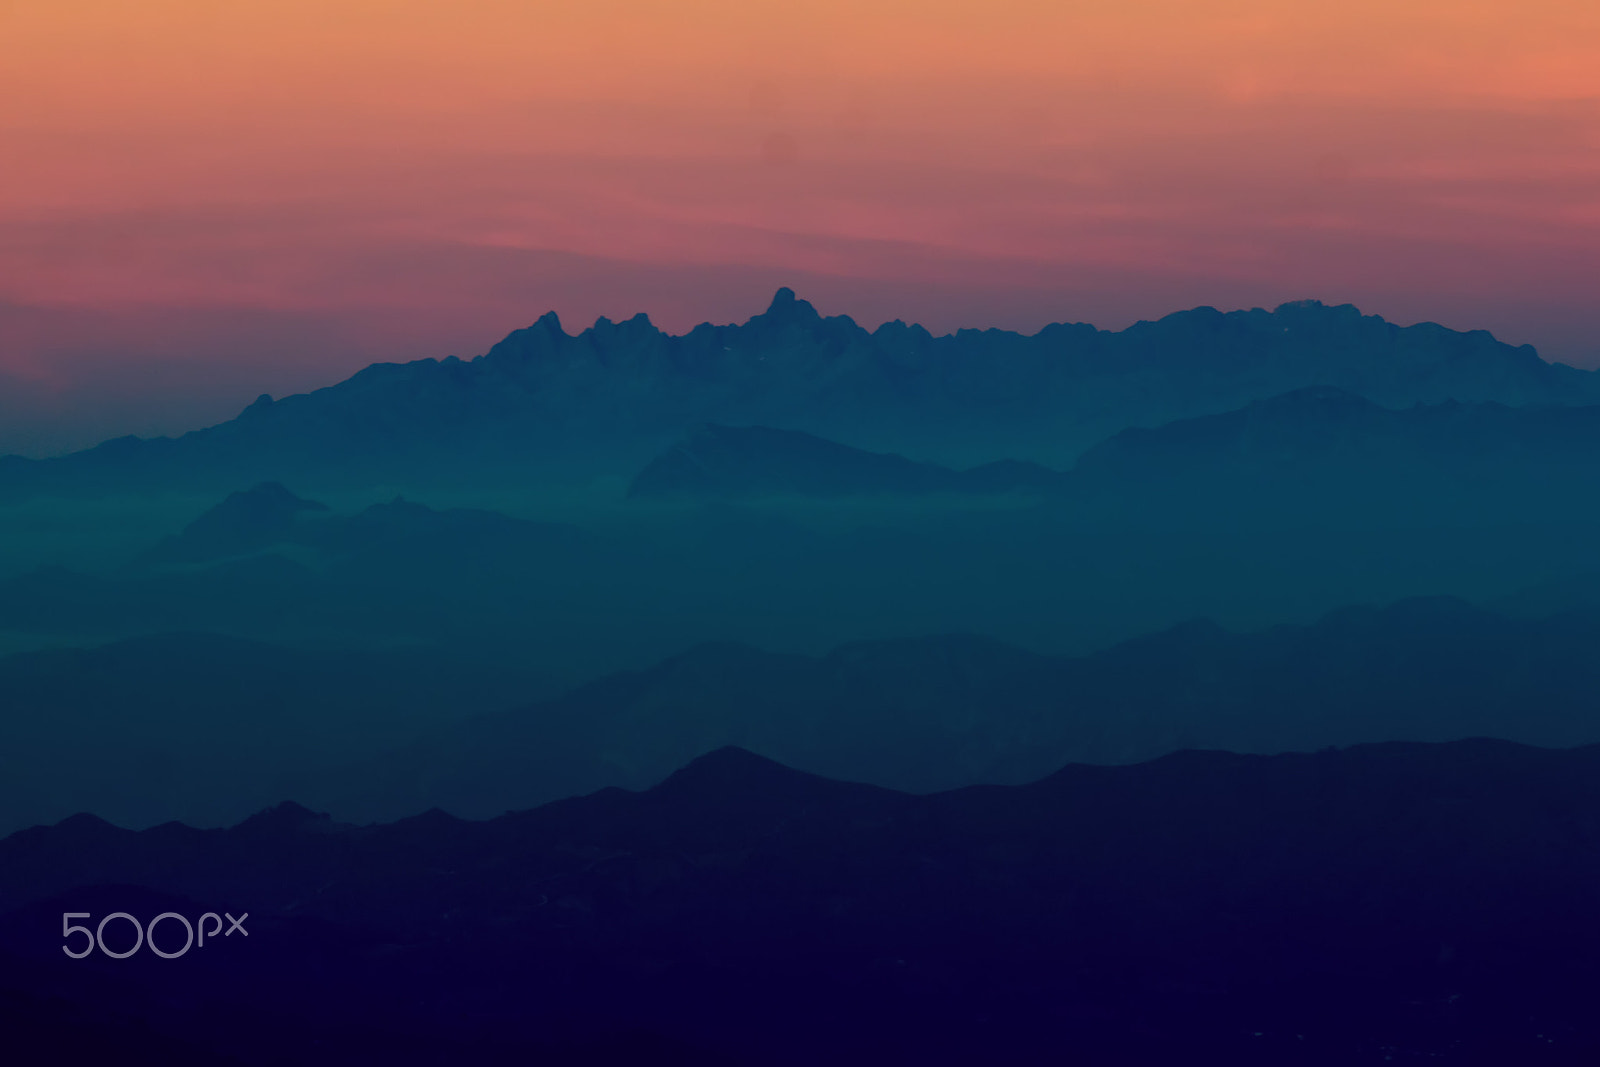 Canon EOS 70D sample photo. Ocaso en picos de europa - sunset in picos de europa photography